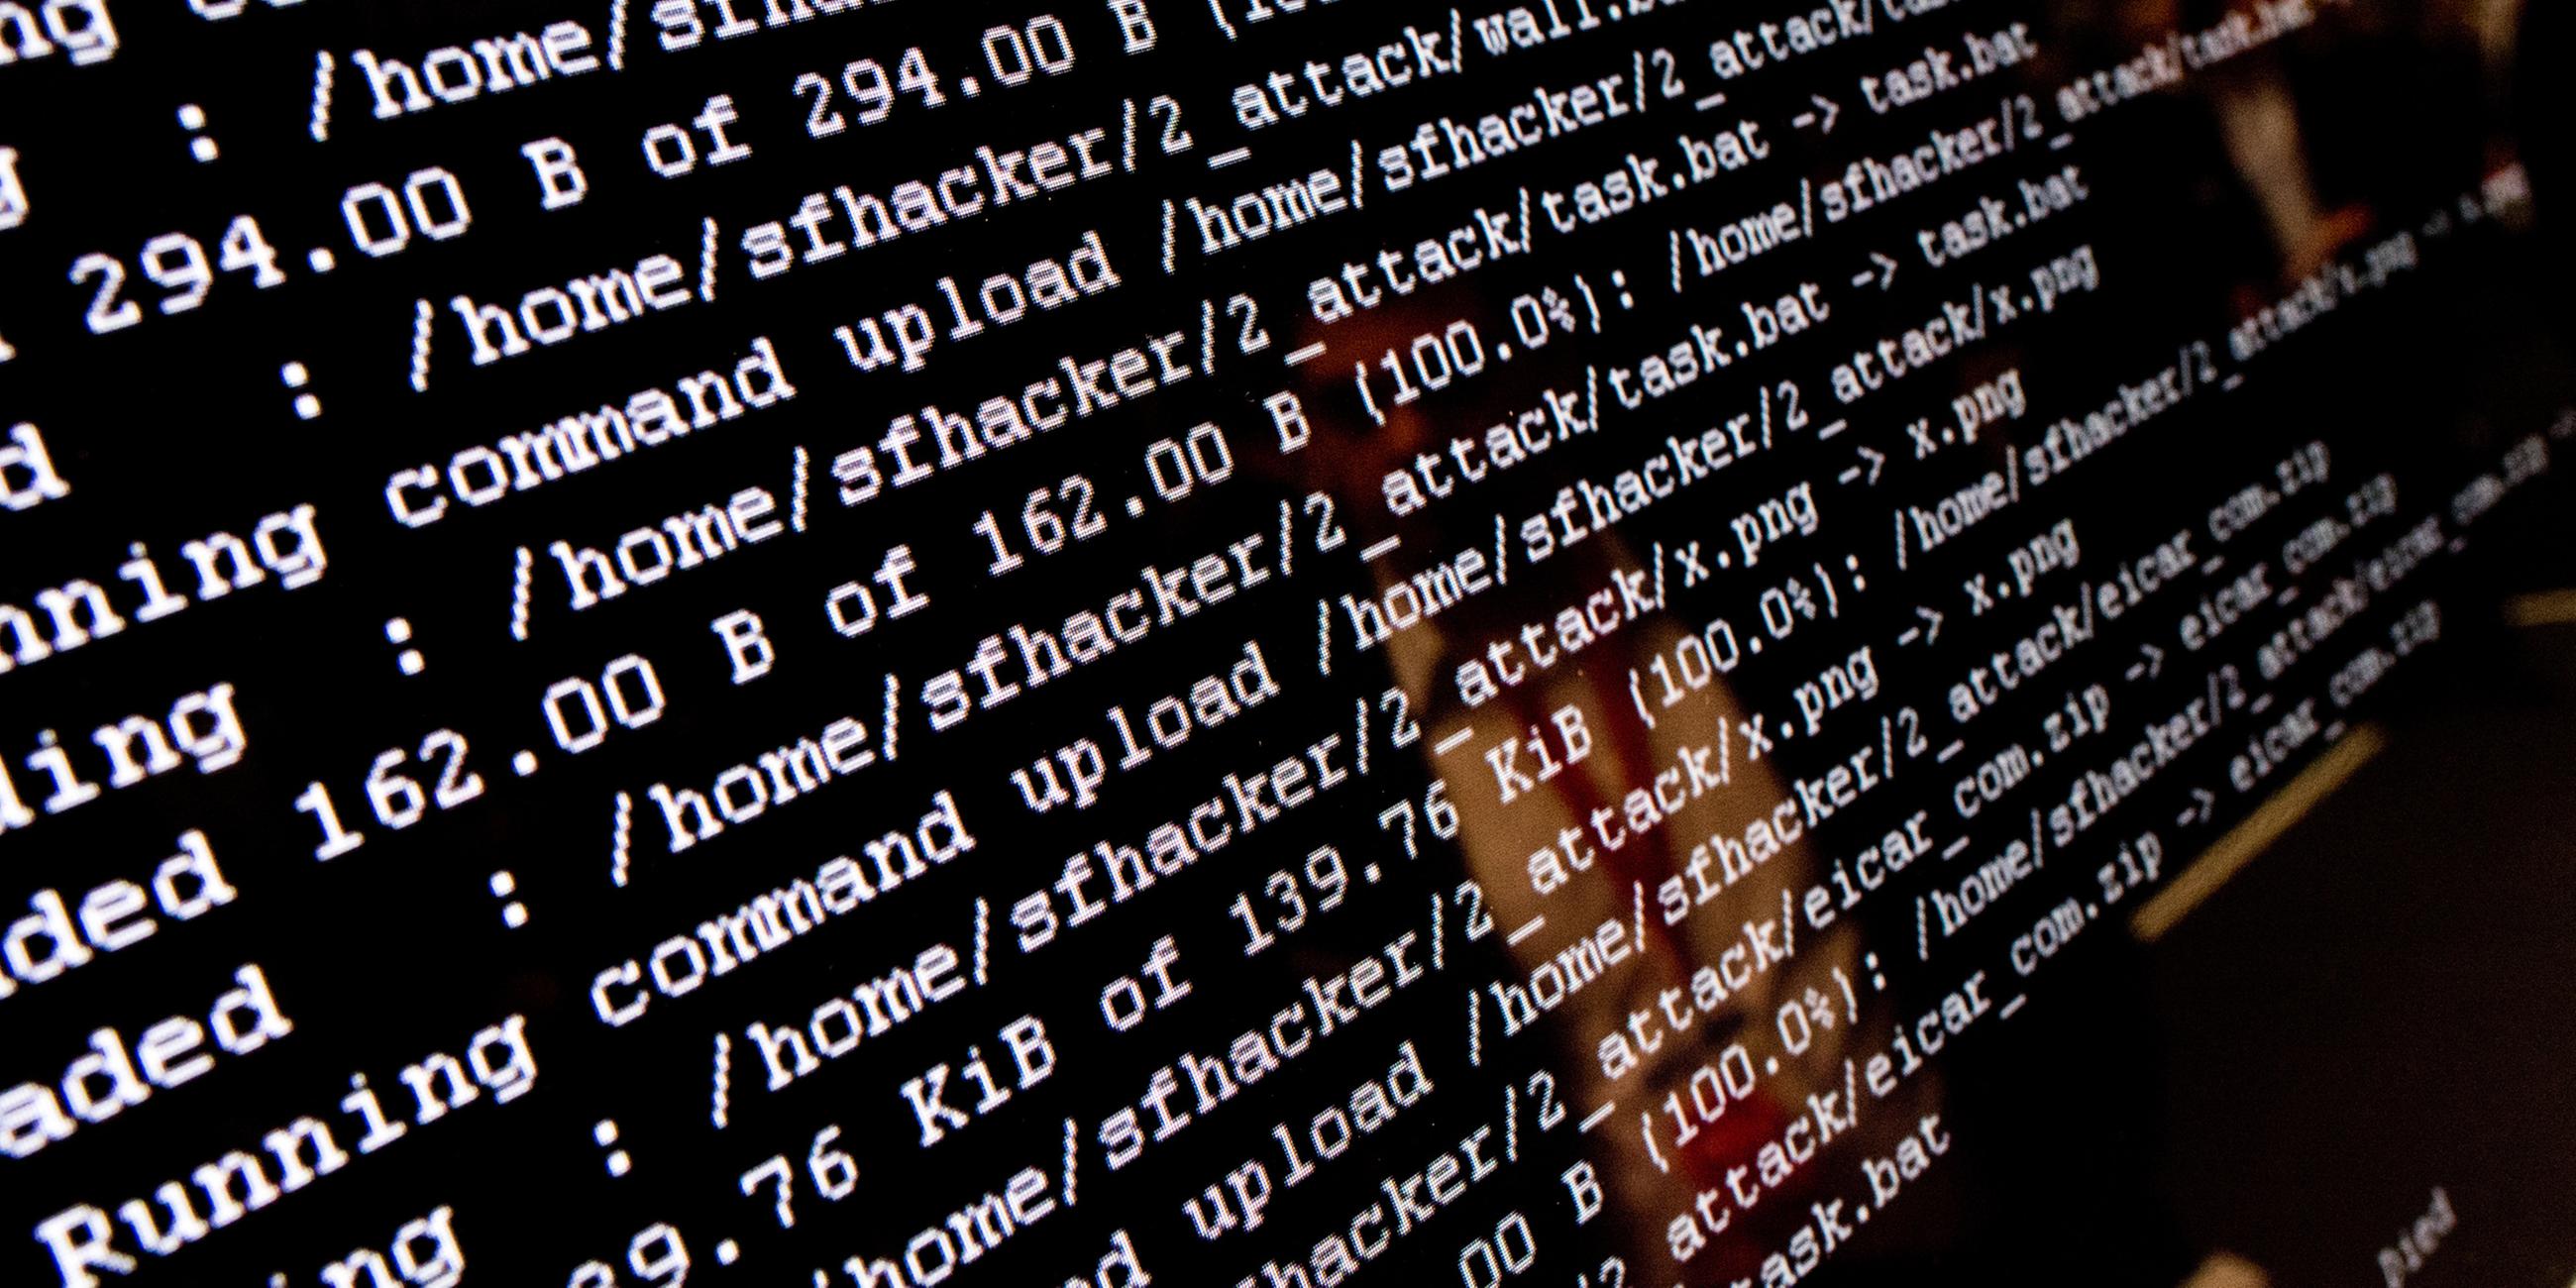 Hackerangriff auf einem Monitor